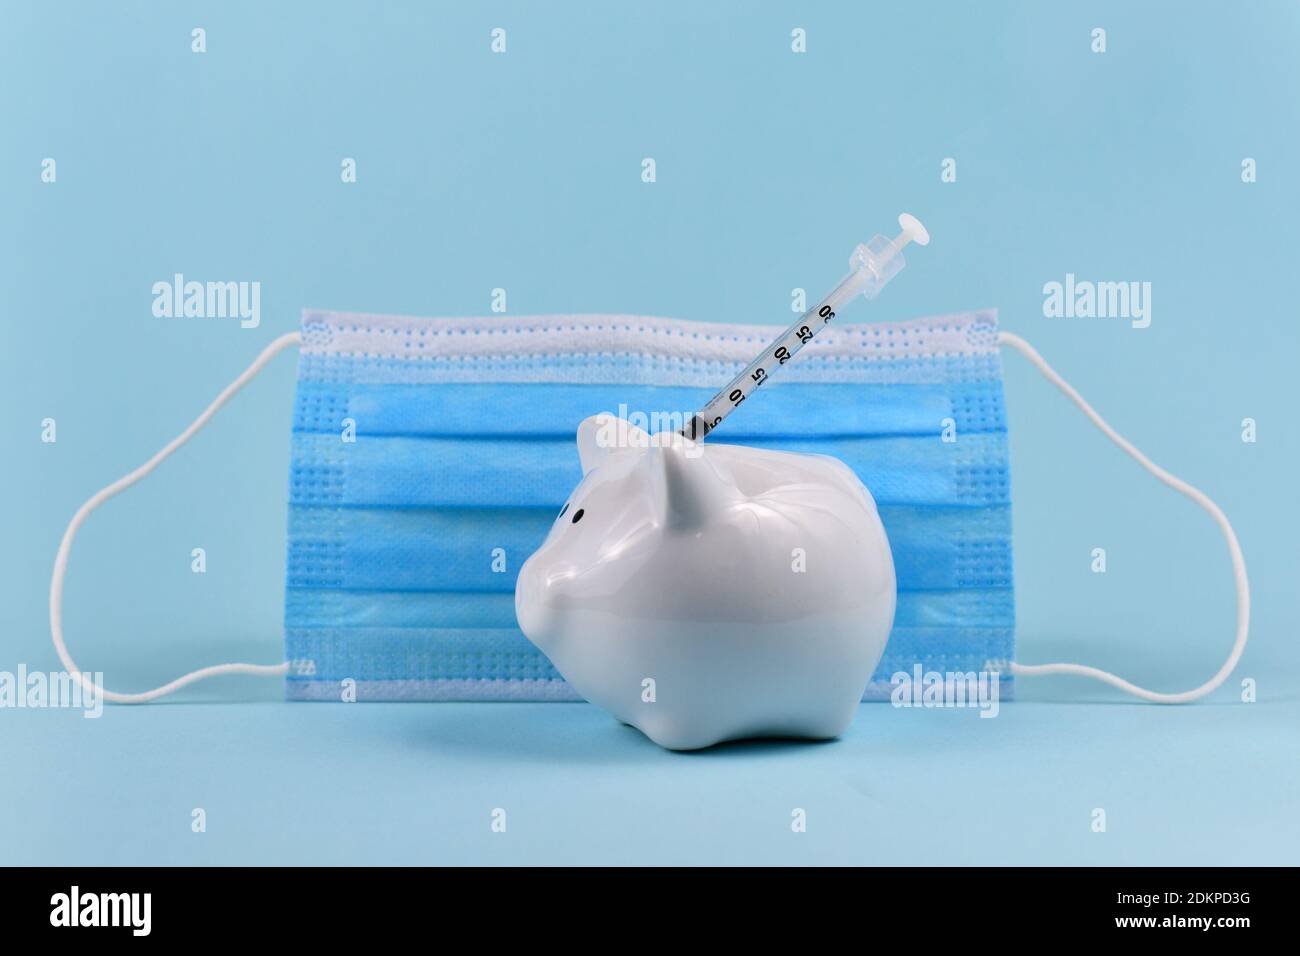 Dépenses de vaccin contre le virus Corona concept avec banque de porc blanche, seringue et masque médical sur fond bleu Banque D'Images